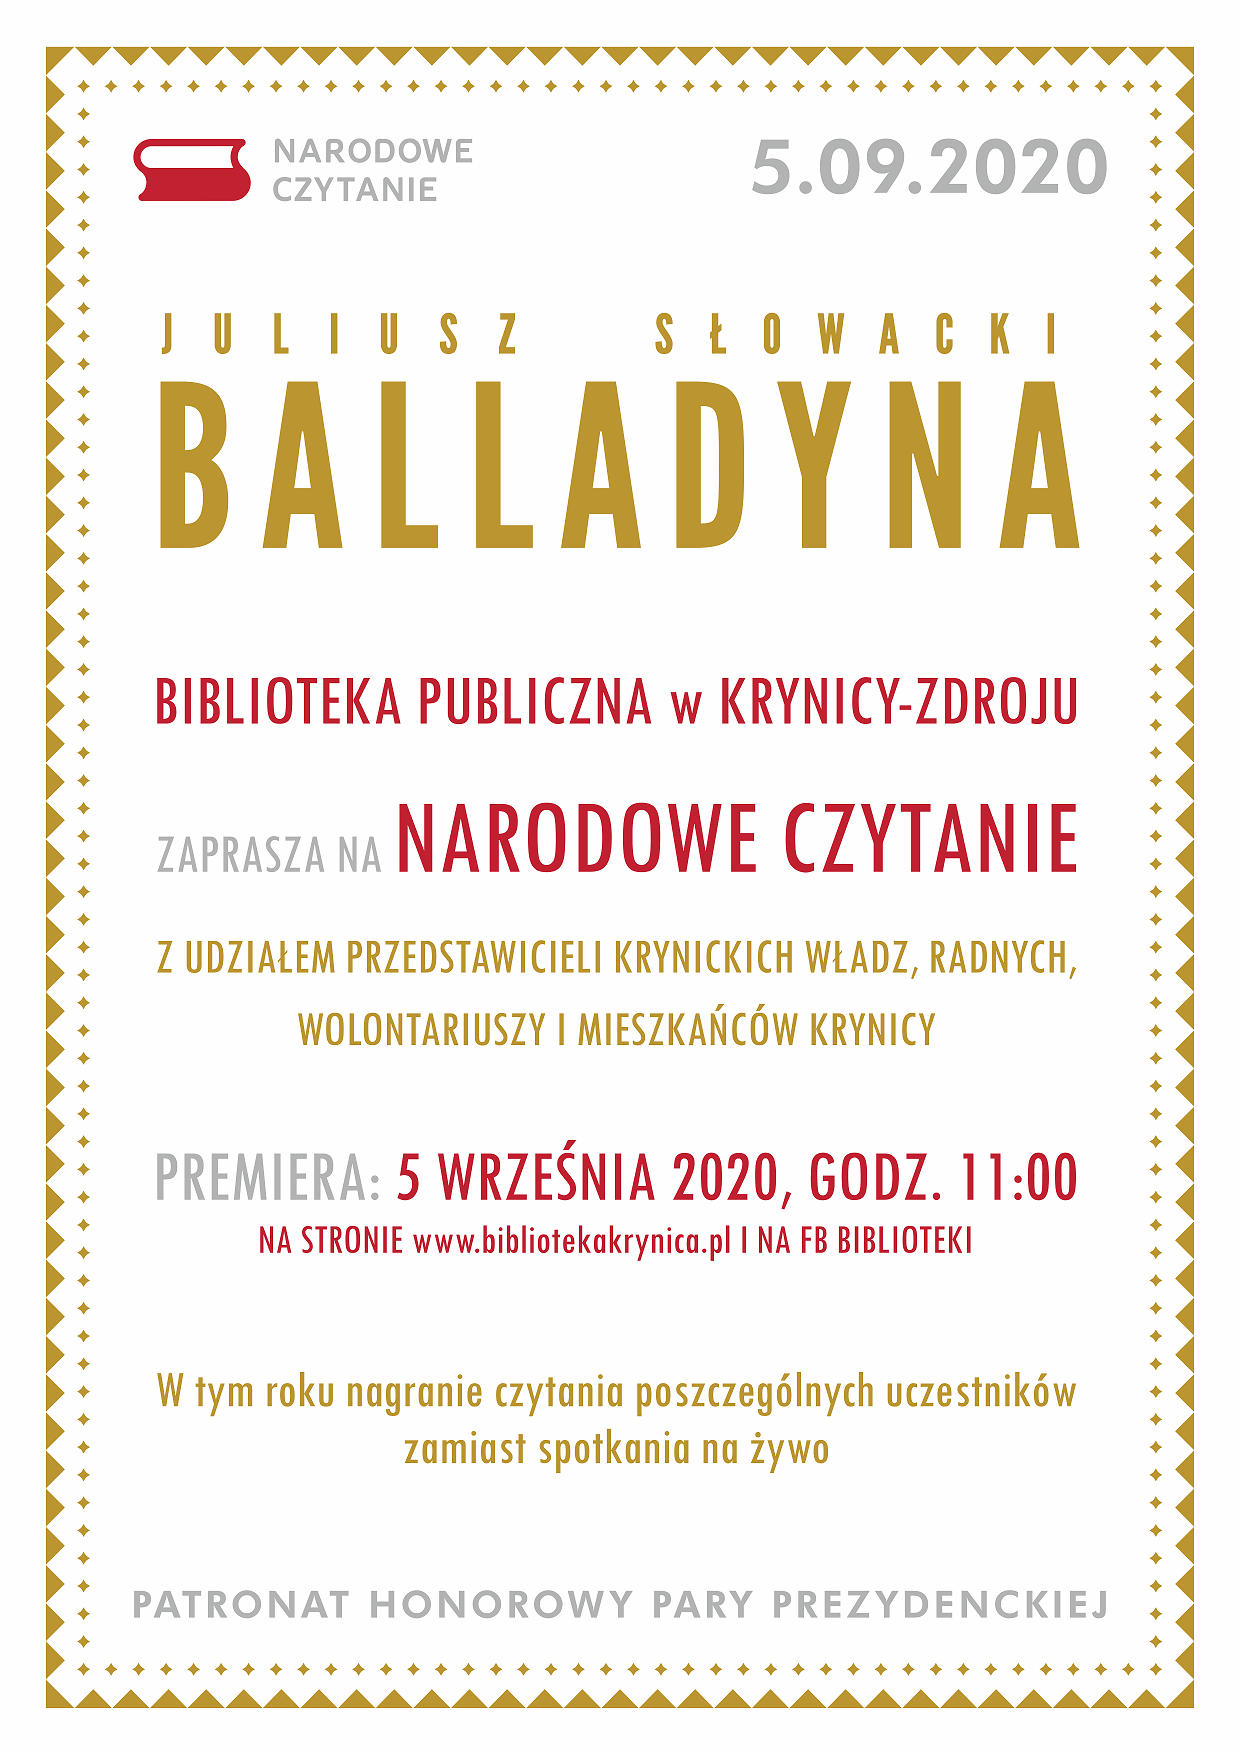 Narodowe czytanie - Balladyna